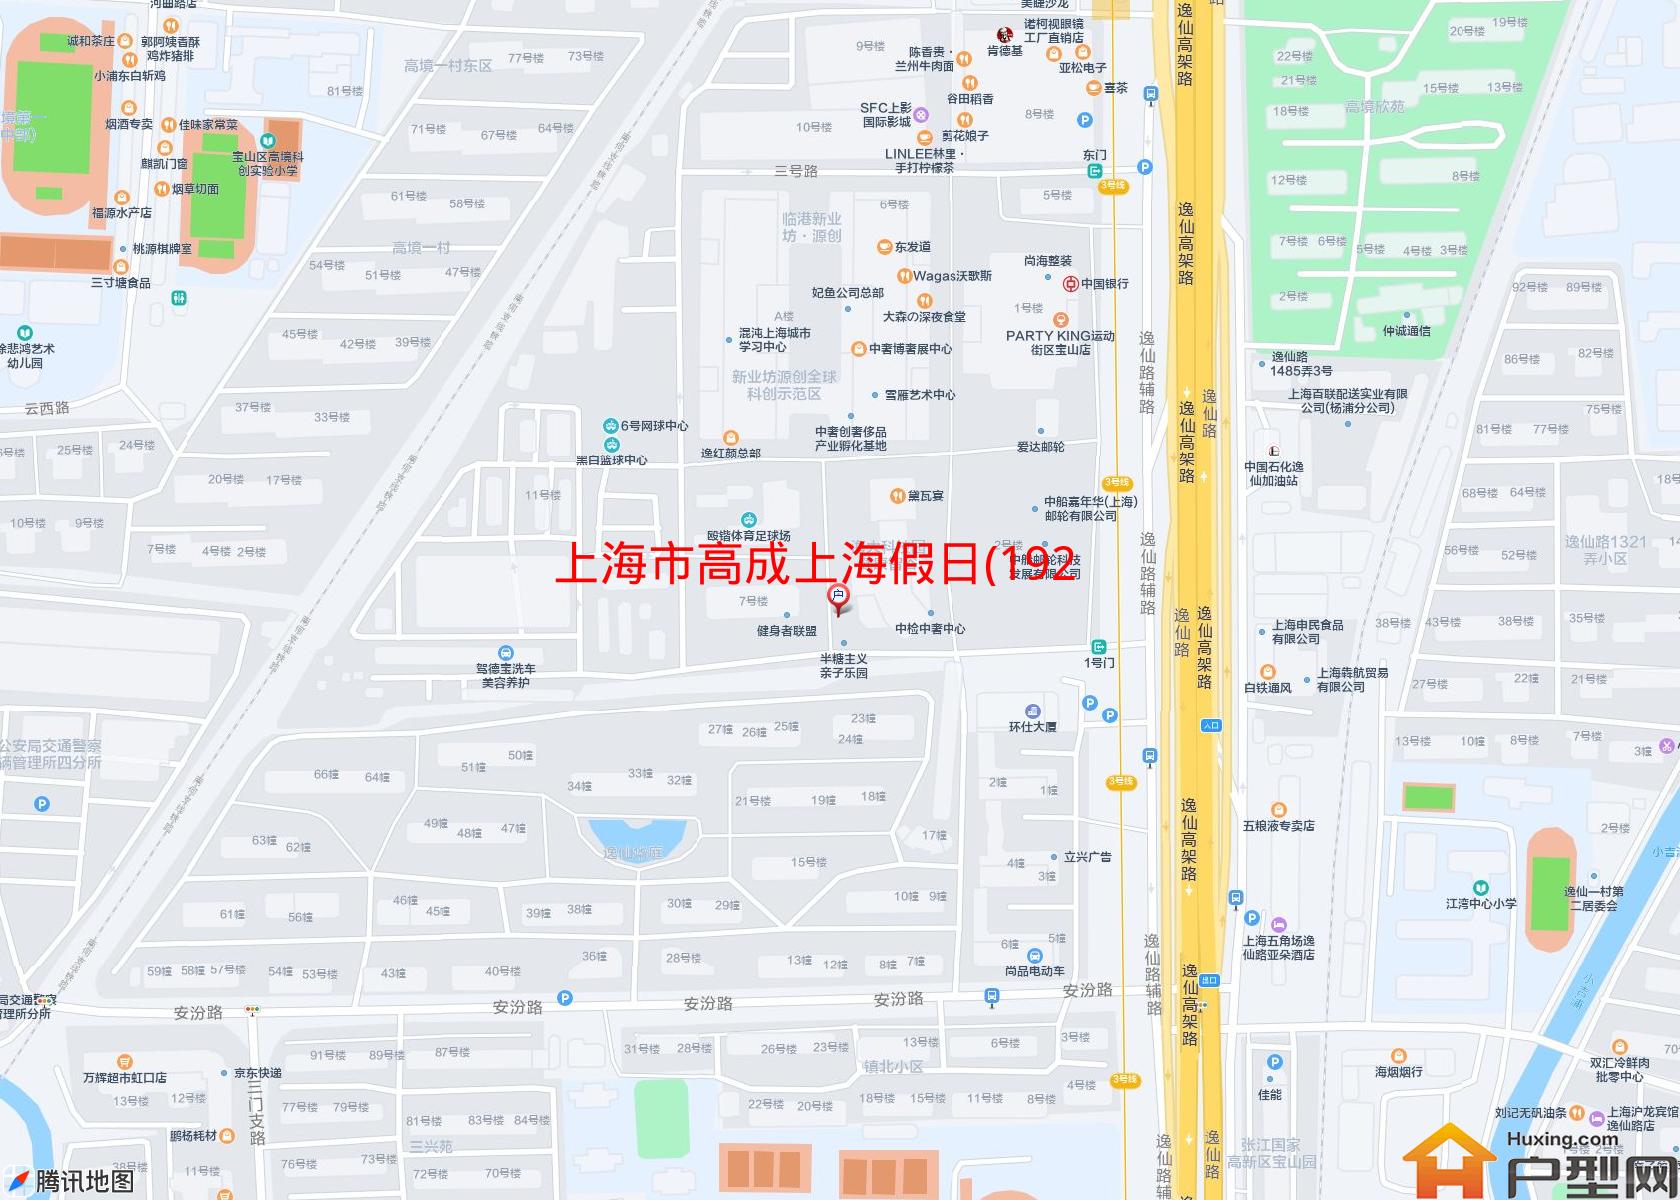 高成上海假日(192-202幢)小区 - 户型网